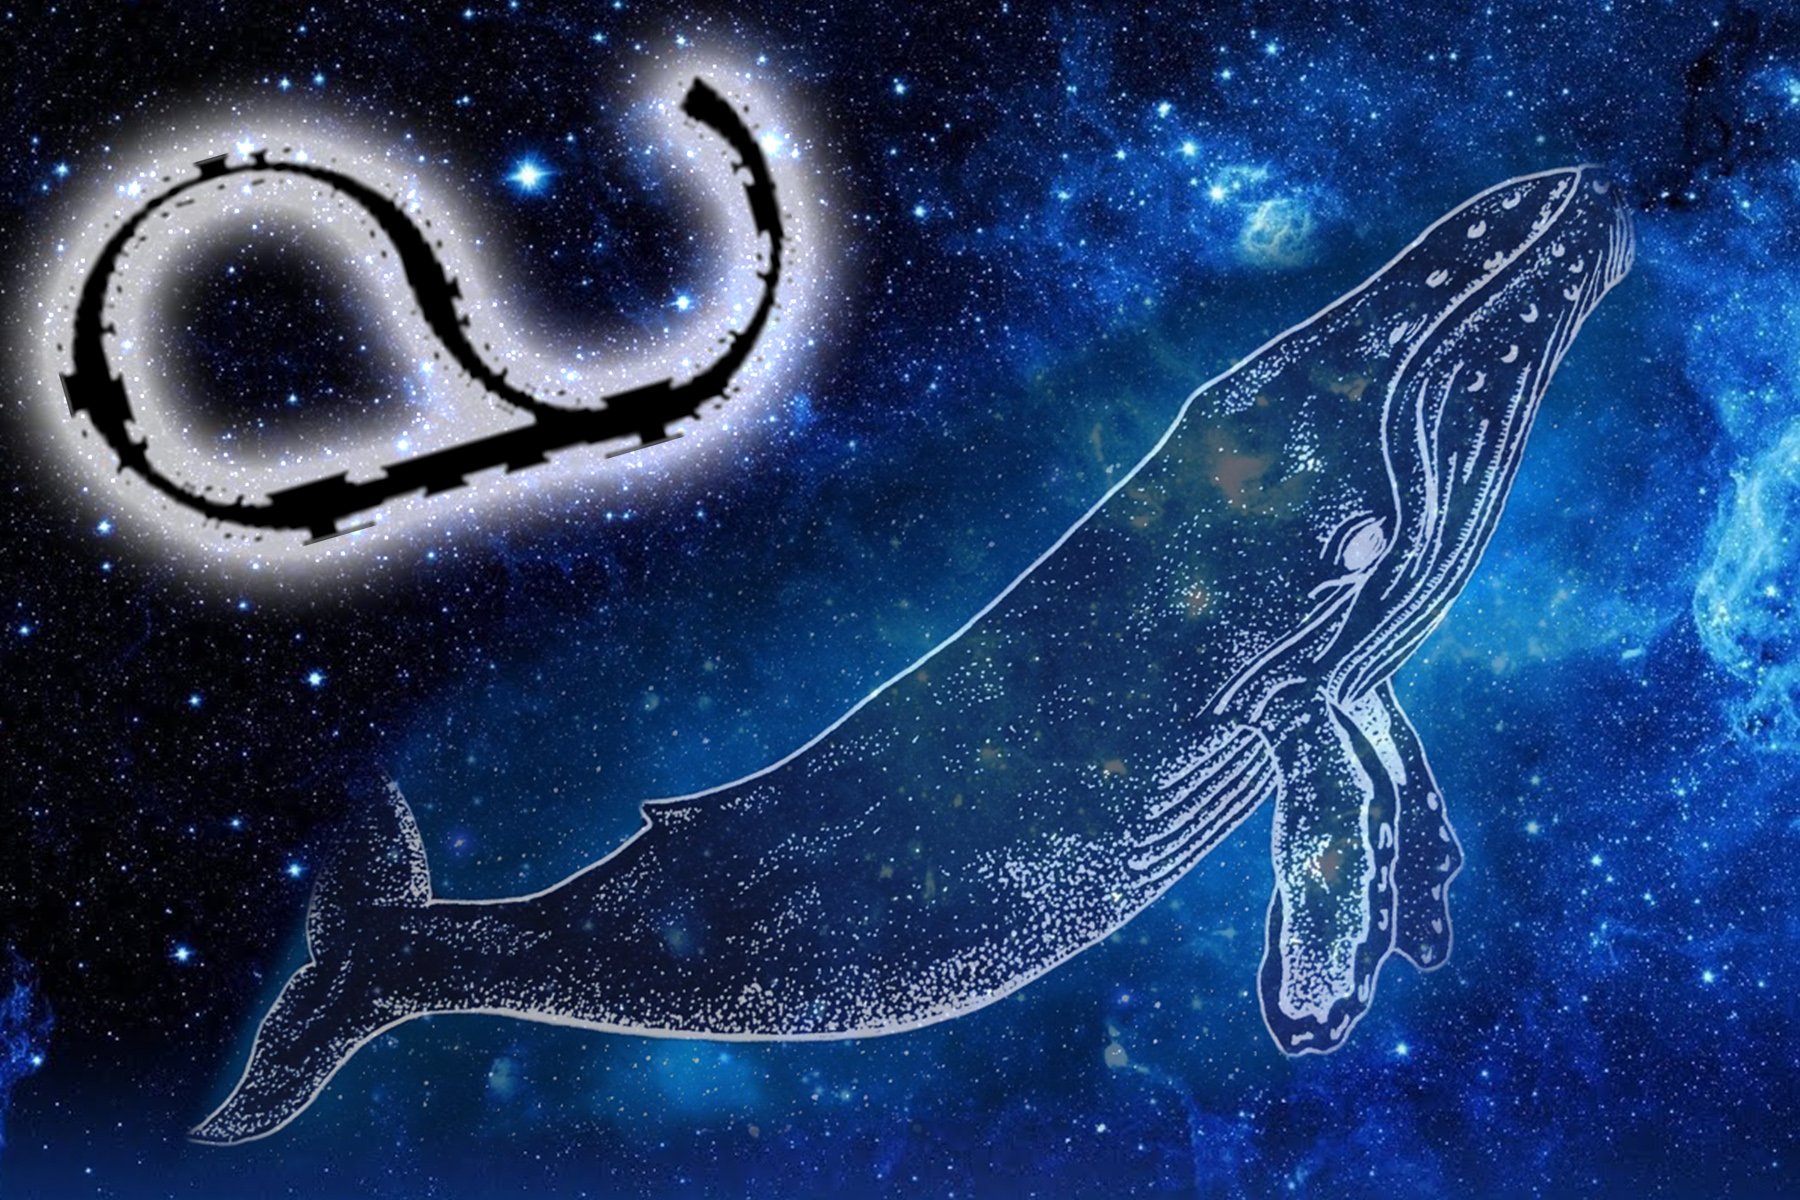 Знак зодиака кит. Змееносец и кит. Знак зодиака кит и Змееносец. Созвездие Змееносец. 14 Знаков зодиака кит и Змееносец.